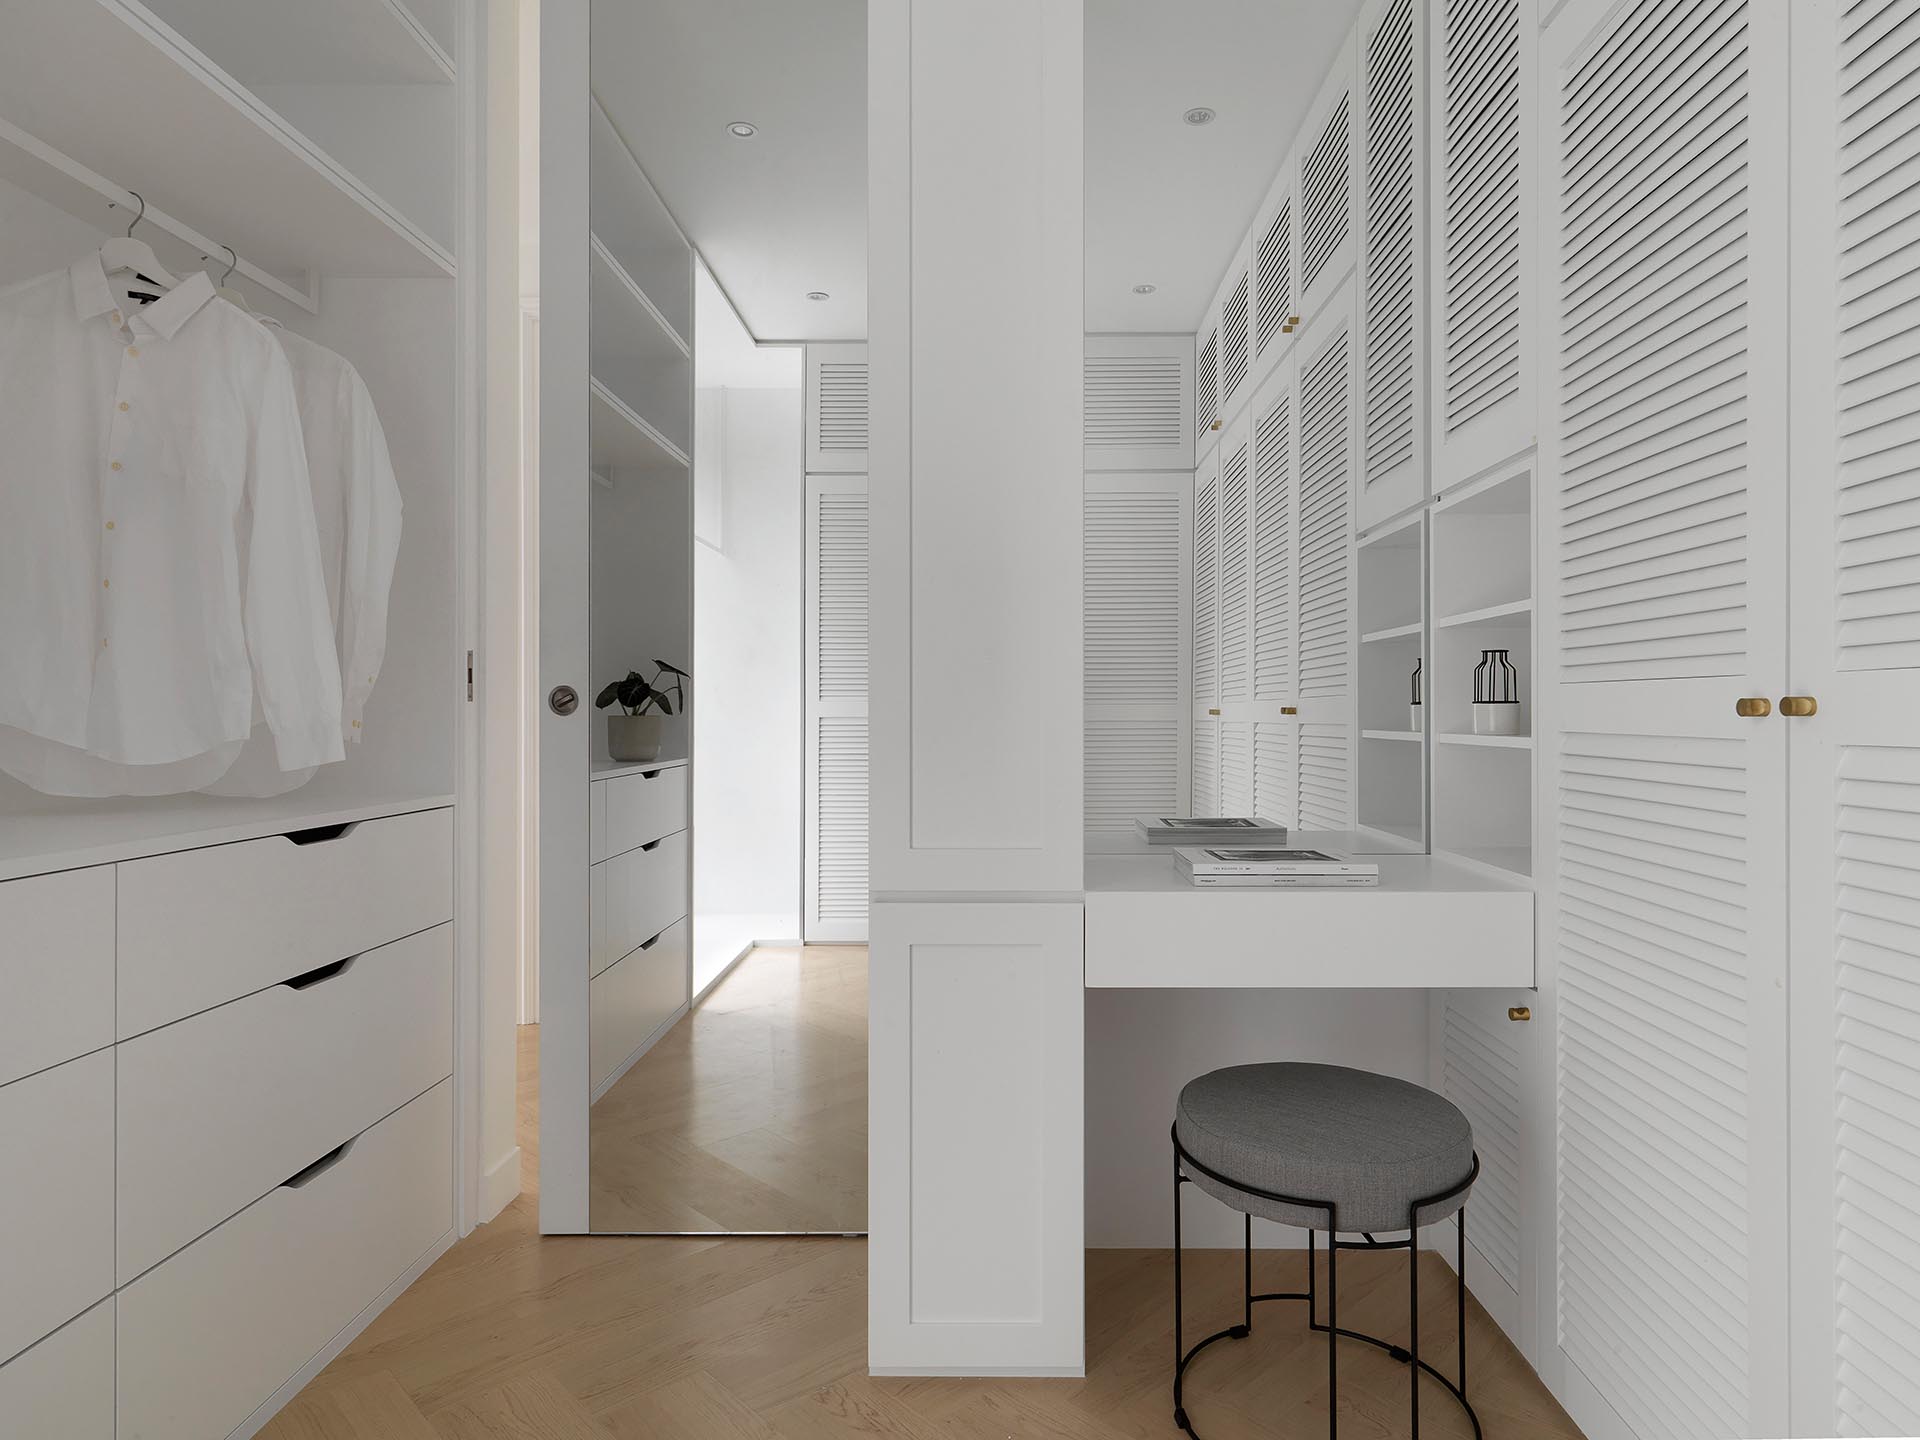 Современная гардеробная с белыми шкафчиками, маленьким туалетным столиком и зеркалом от пола до потолка за дверью.